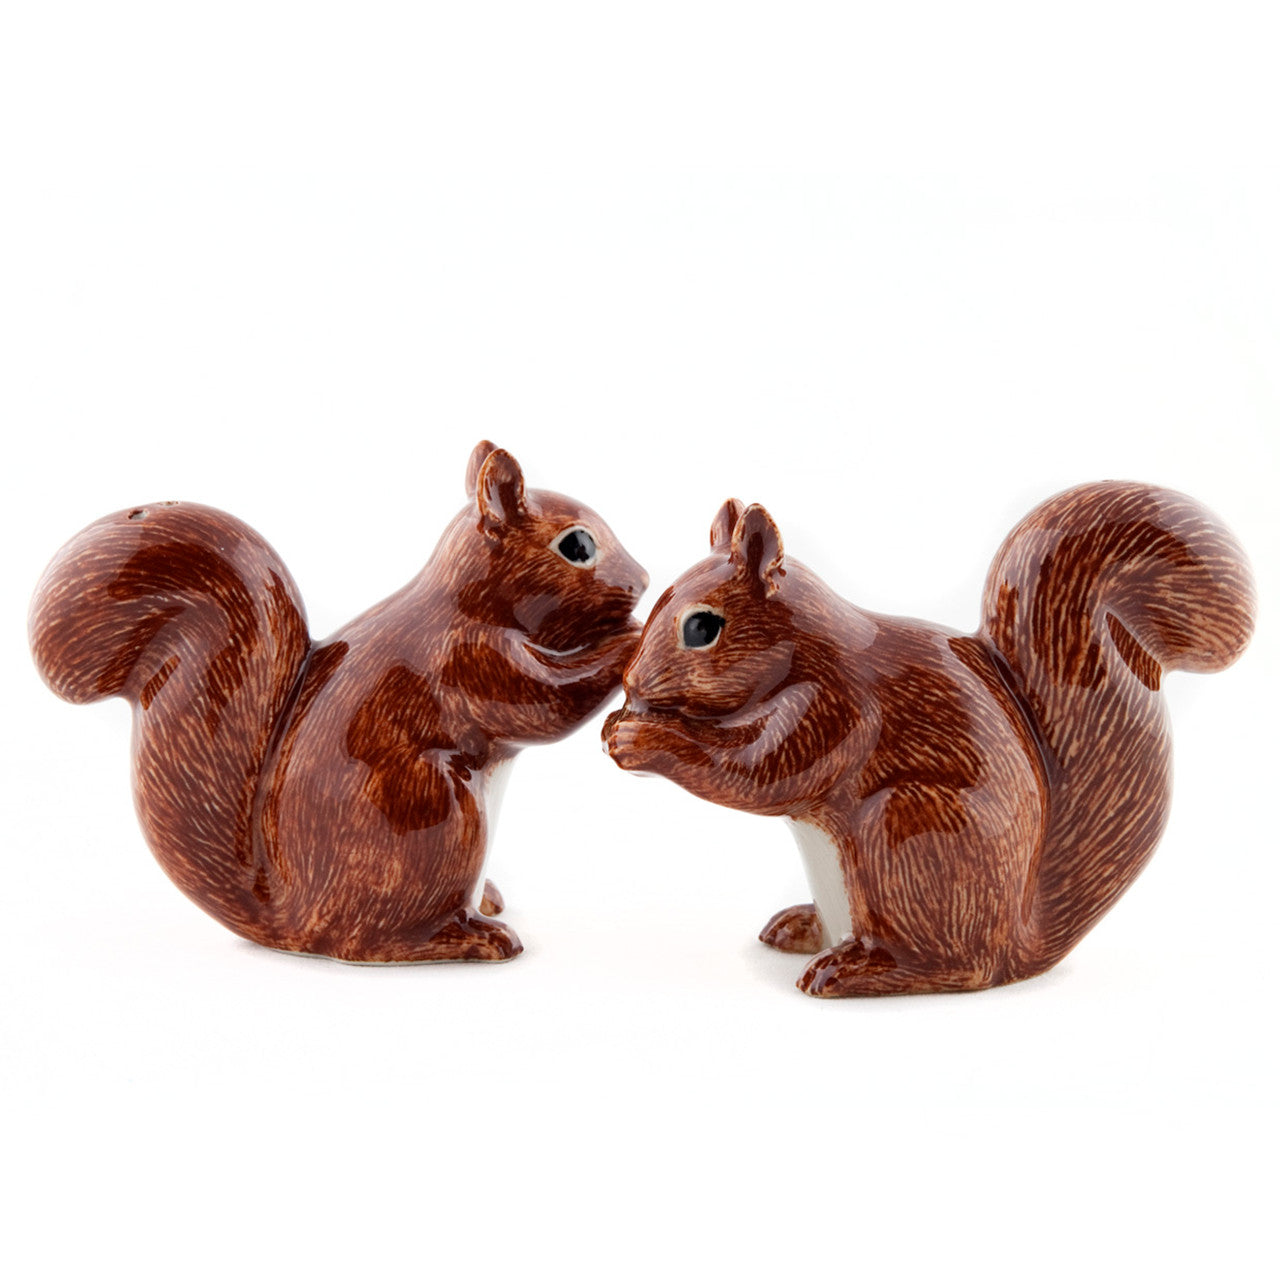 Squirrel Salt and Pepper pots